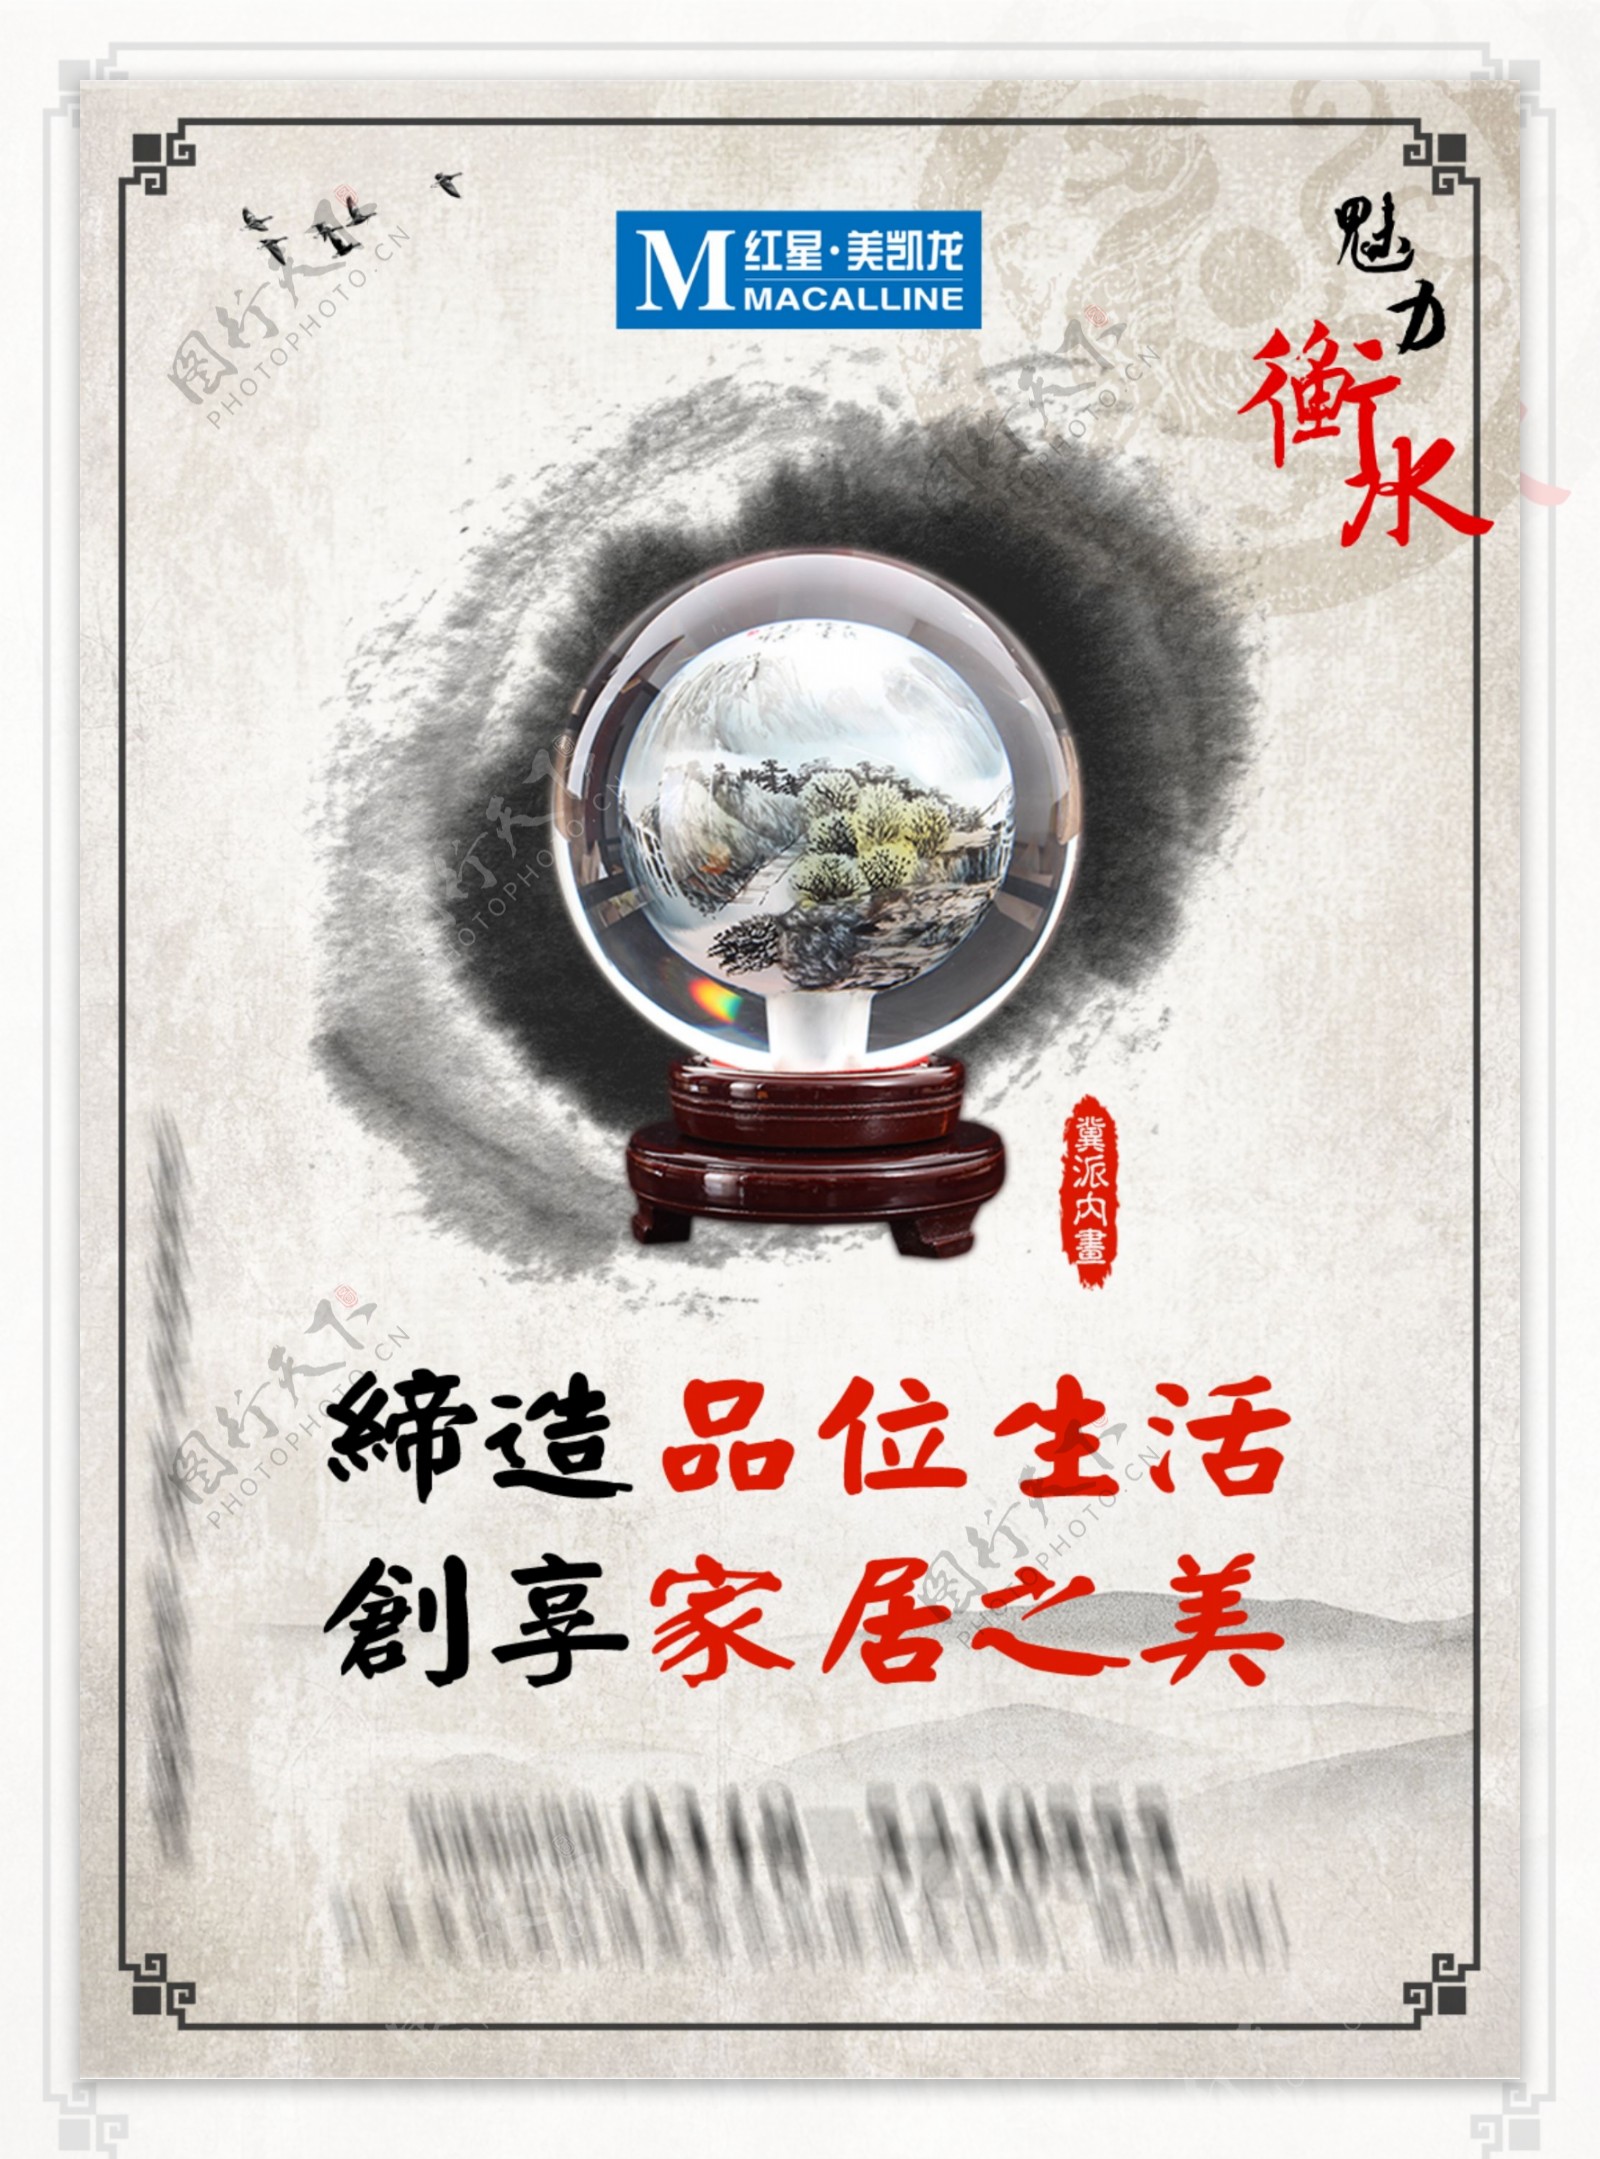 高清衡水系列中国风海报PSD源文件